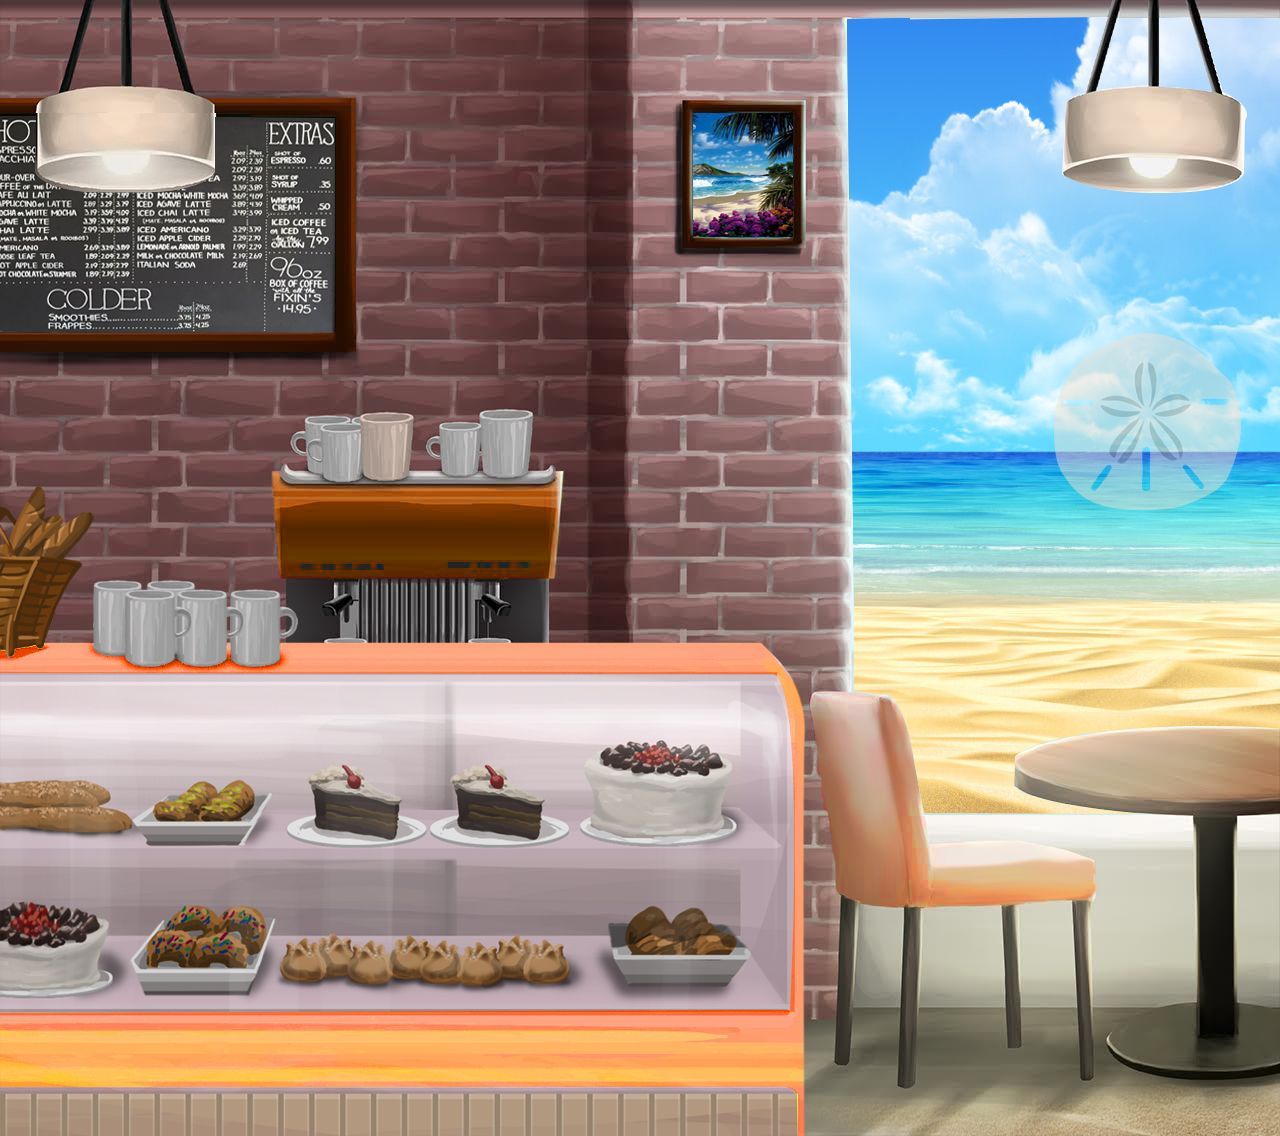 Image result for episode cafe background. Anime background, Episode interactive background, Episode background